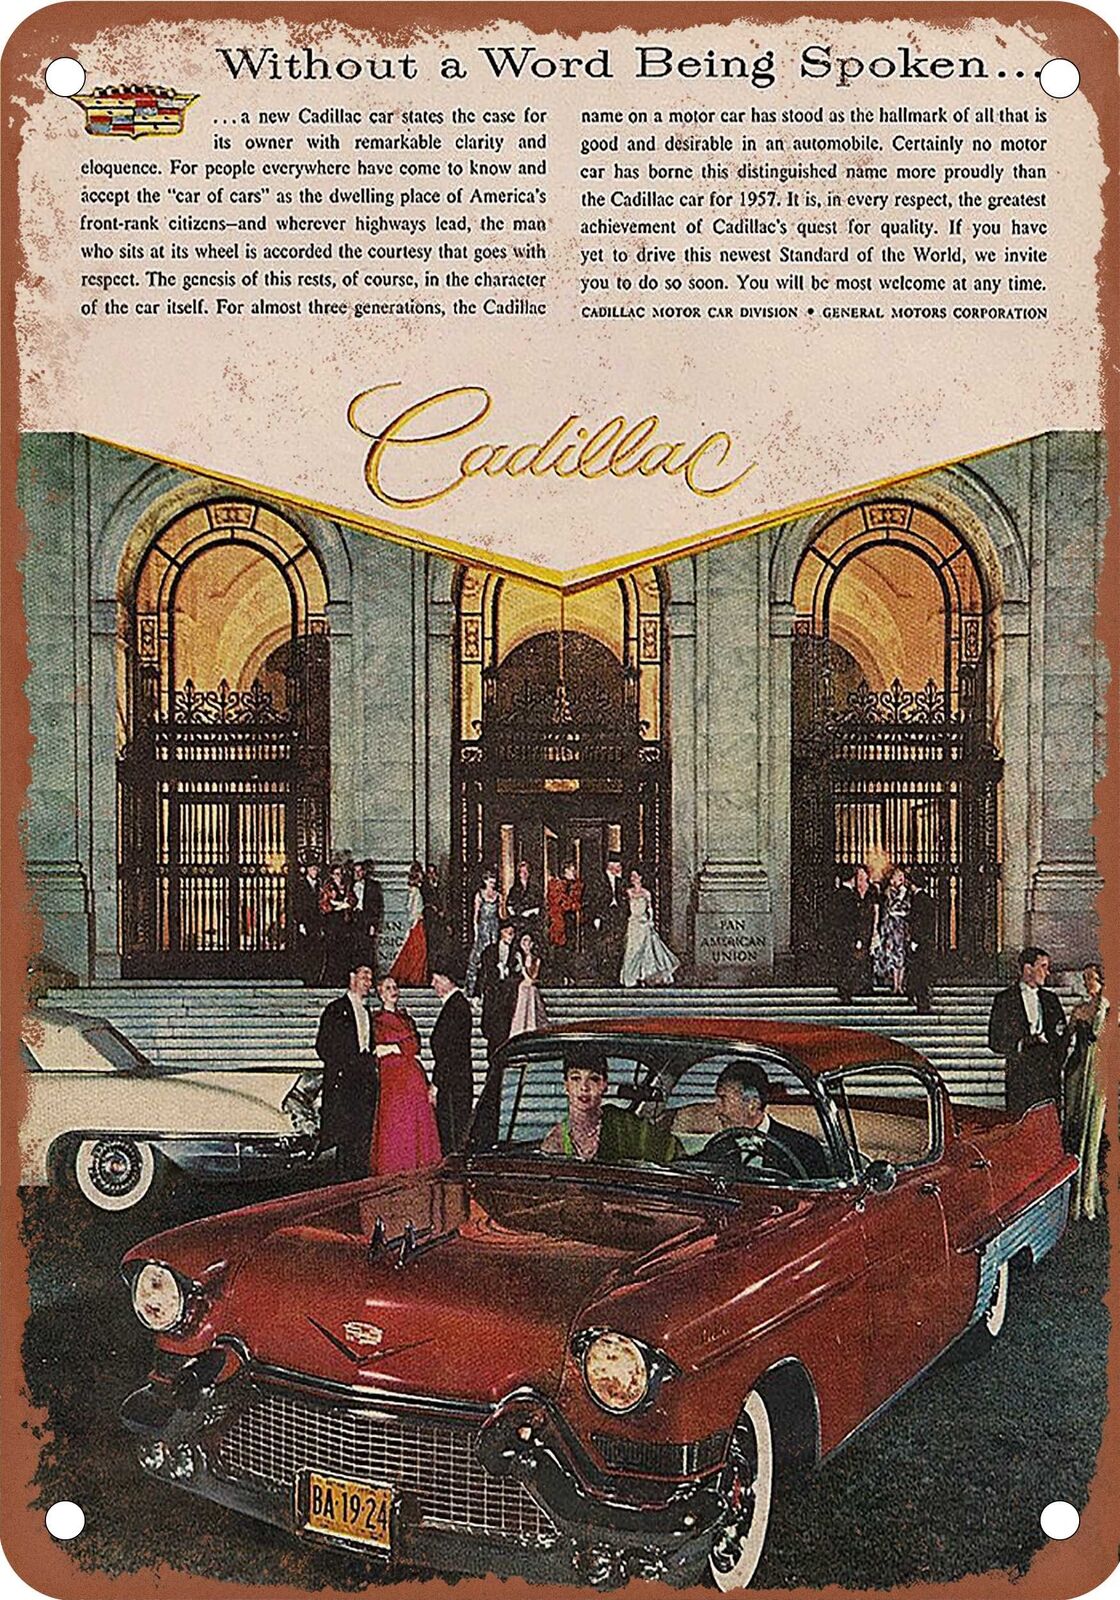 METAL SIGN - 1957 Cadillac Vintage Ad 07 - Old Retro Rusty Look